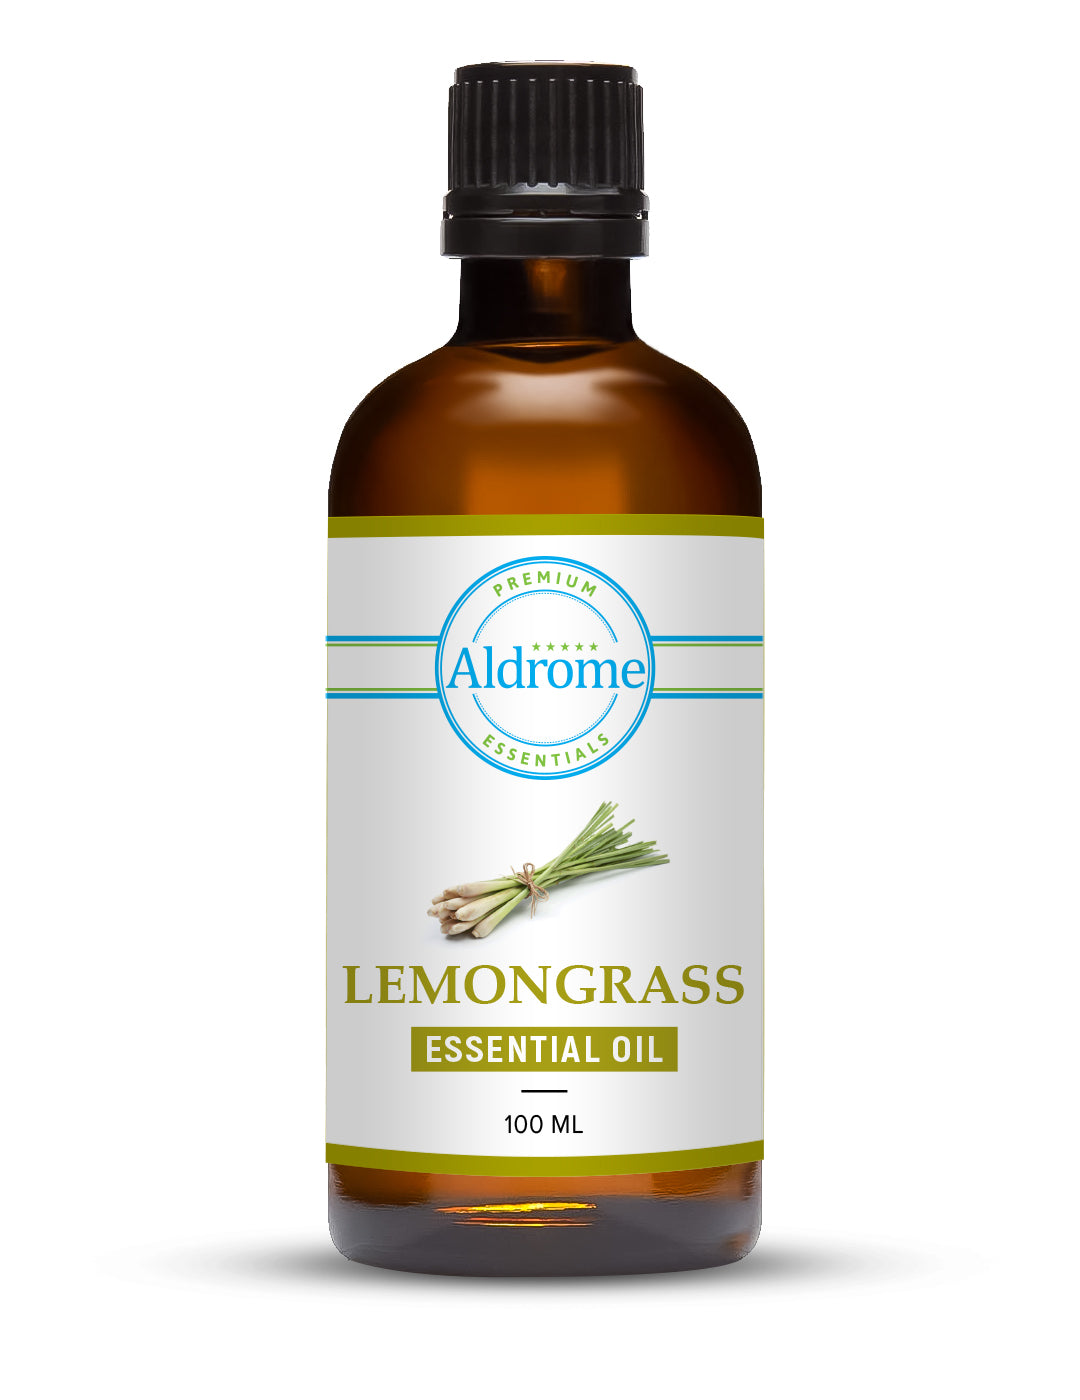 Lemongrass Essential Oil - 100ml | Buy Lemongrass Essential Oil | Aldrome Premium Fragrance Oil